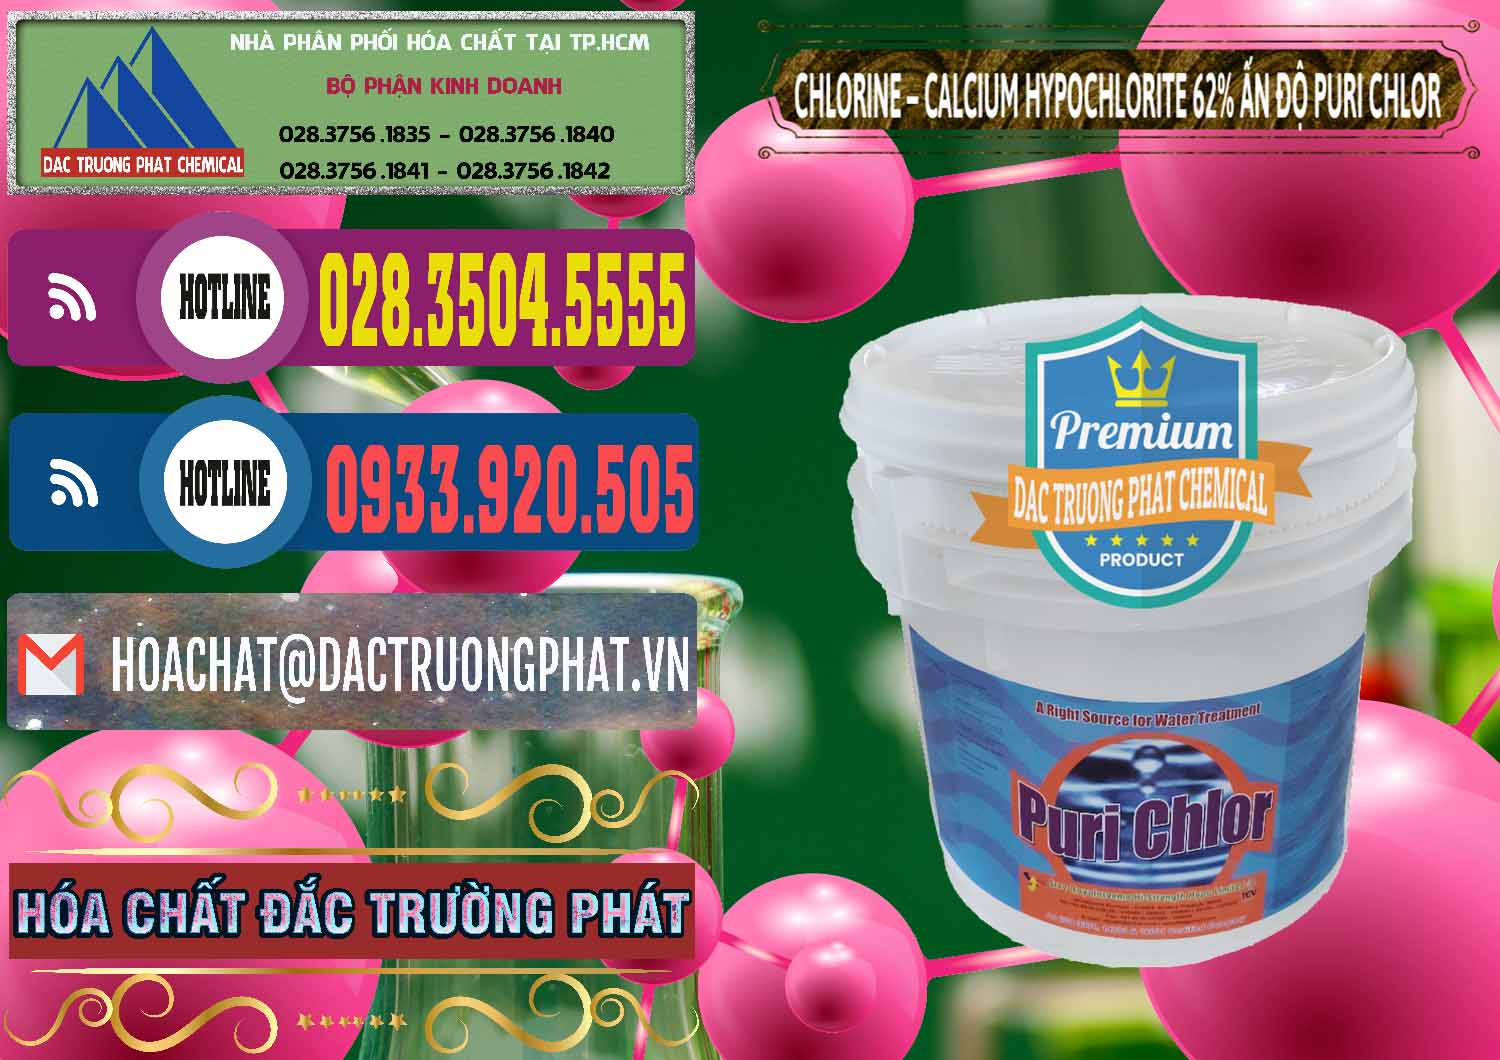 Chuyên cung ứng ( bán ) Chlorine – Clorin 62% Puri Chlo Ấn Độ India - 0052 - Nhà nhập khẩu và cung cấp hóa chất tại TP.HCM - muabanhoachat.com.vn